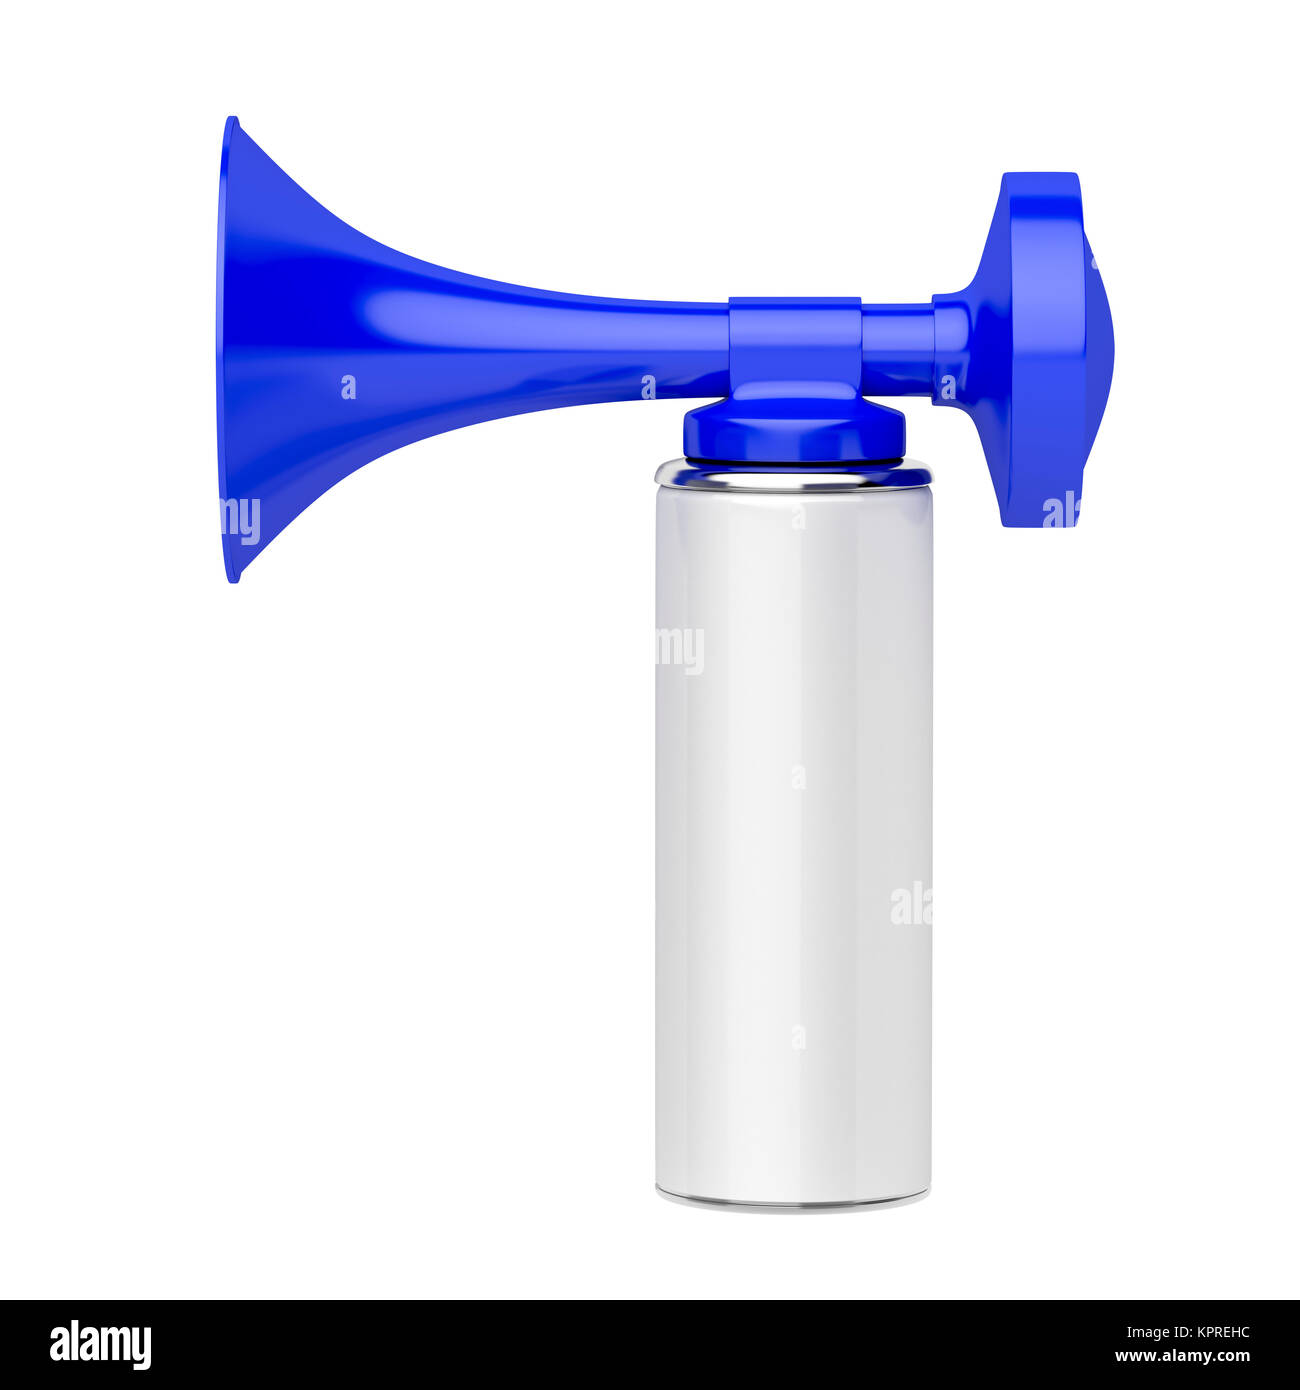 Portable air horn Stock Photo - Alamy